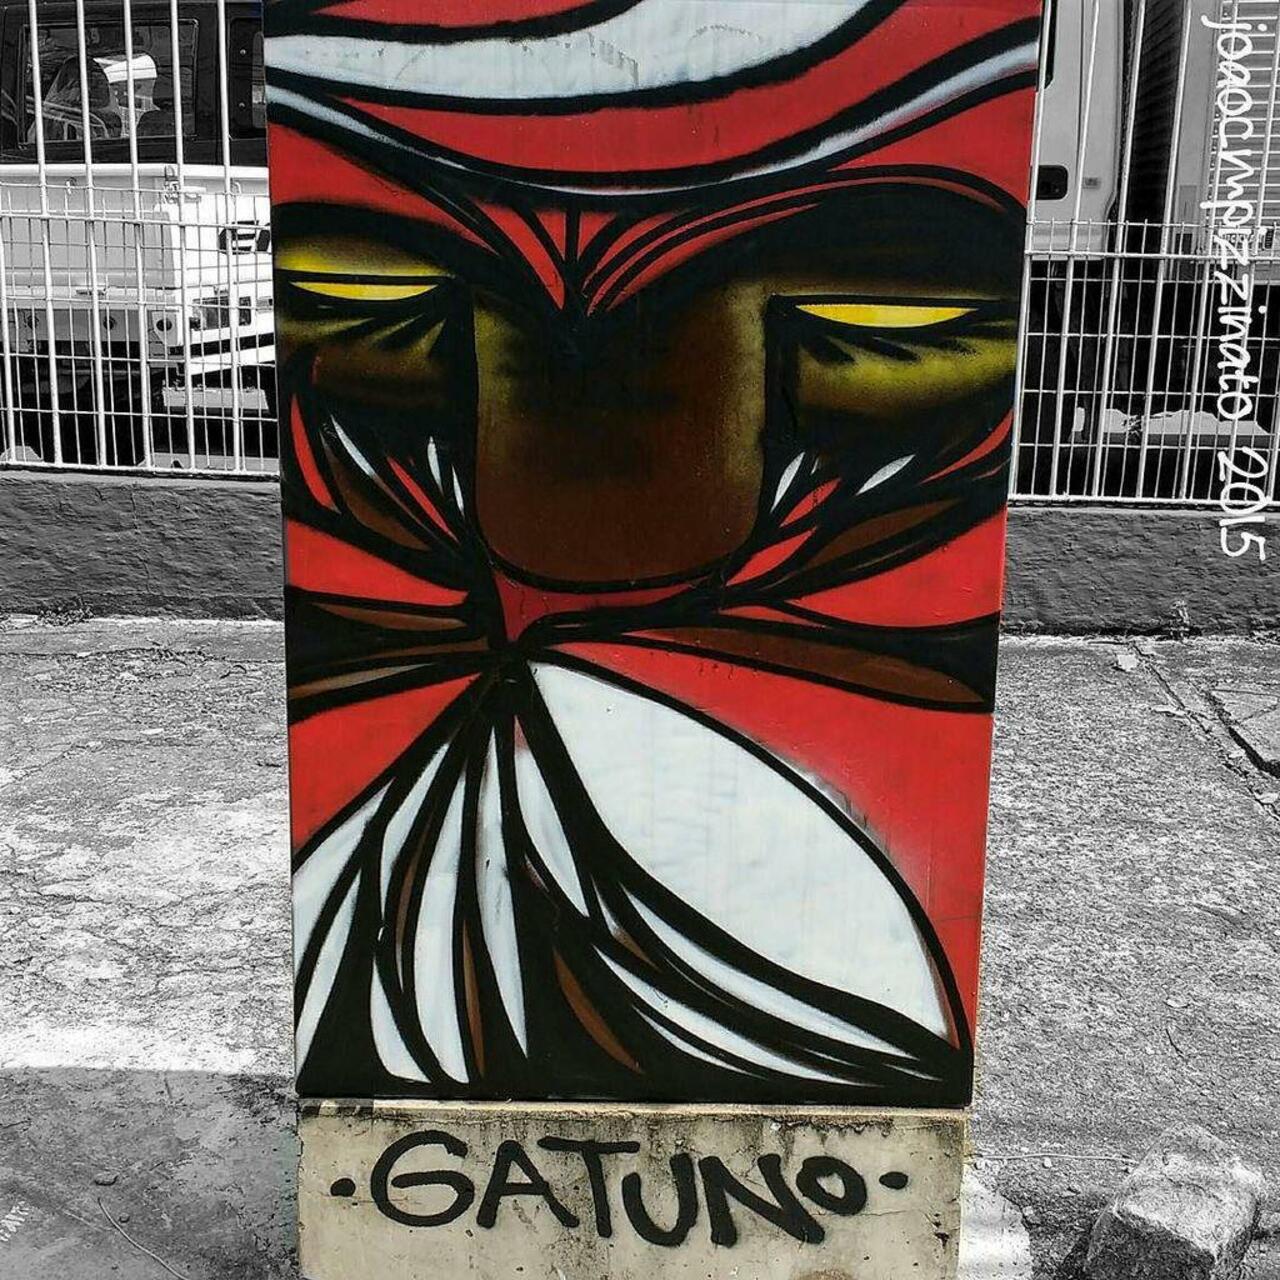 RT @artpushr: via #joaocmpizzinato "http://bit.ly/1RoxeCB" #graffiti #streetart http://t.co/re3nPhZGyQ